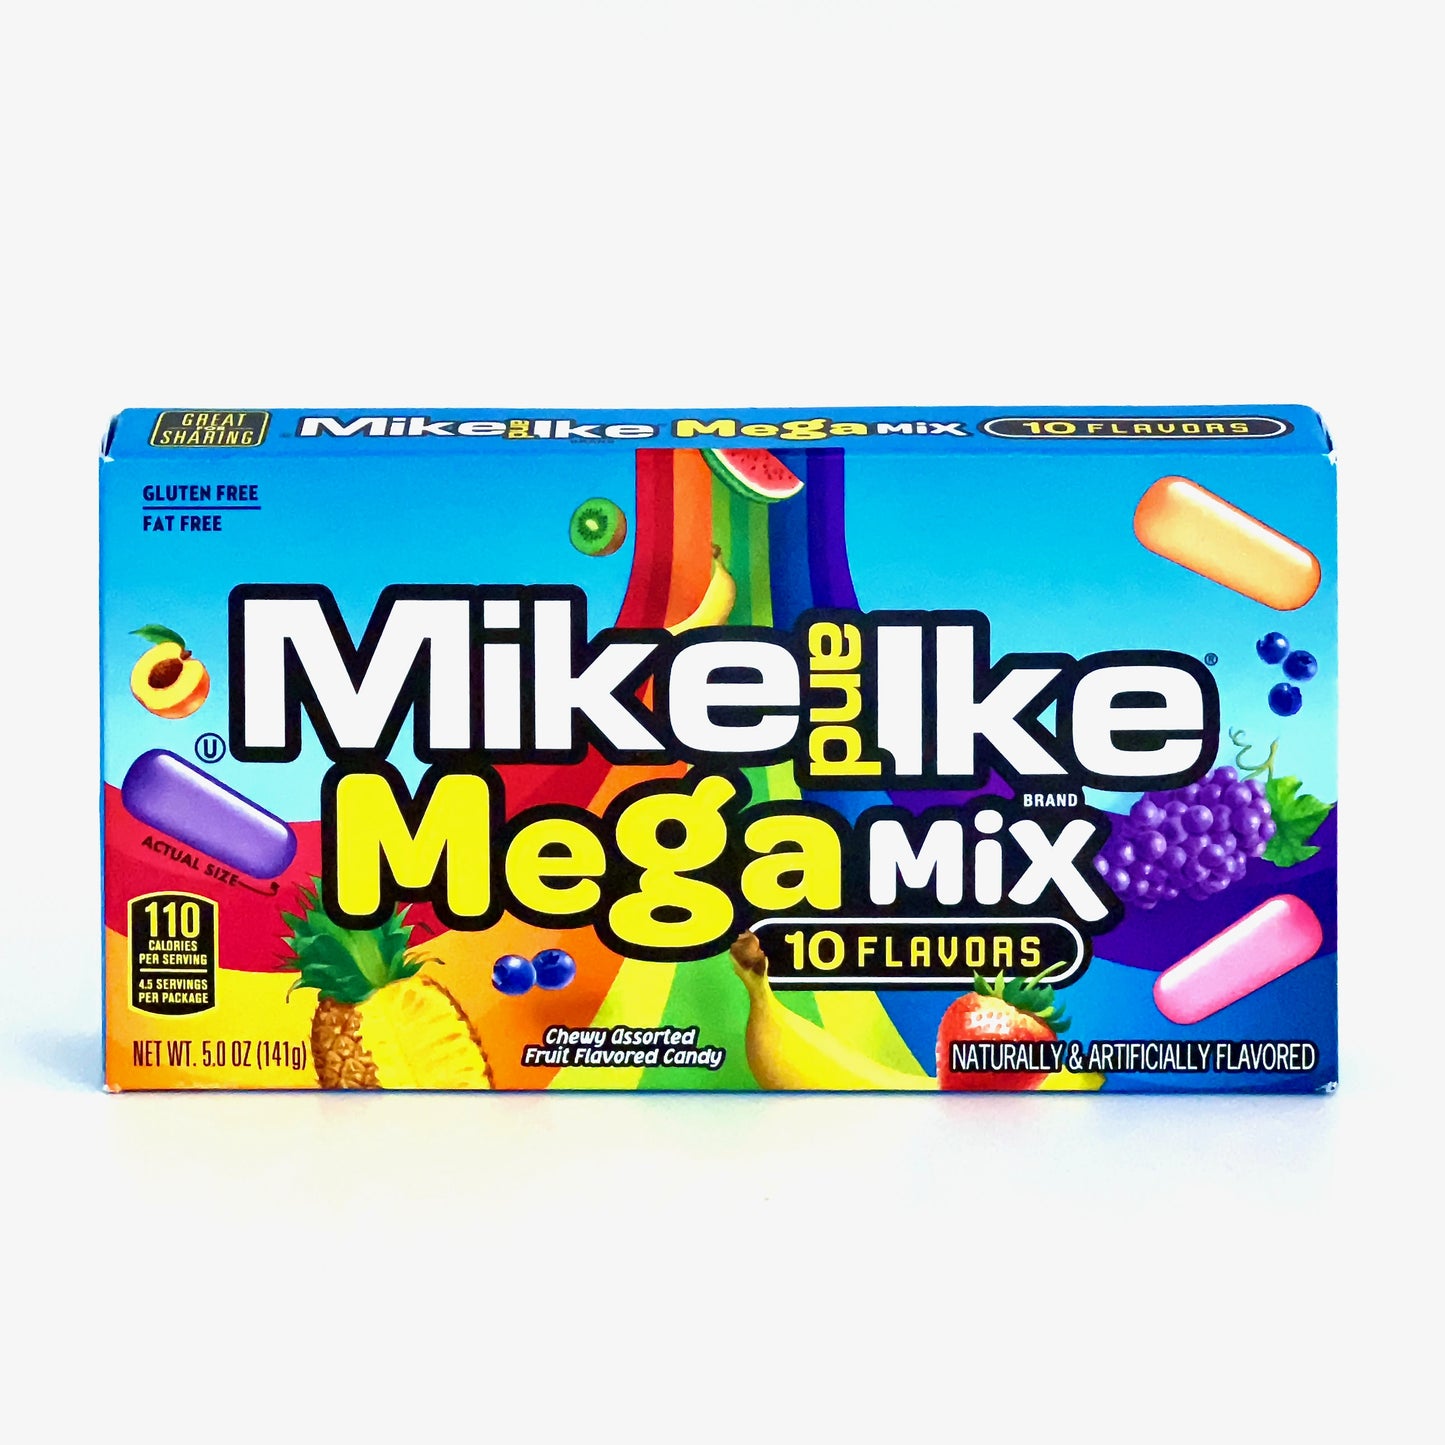 Der Mike and Ike Megamix mit 10 verscheiden fruchtigen Geschmacksrichtungen